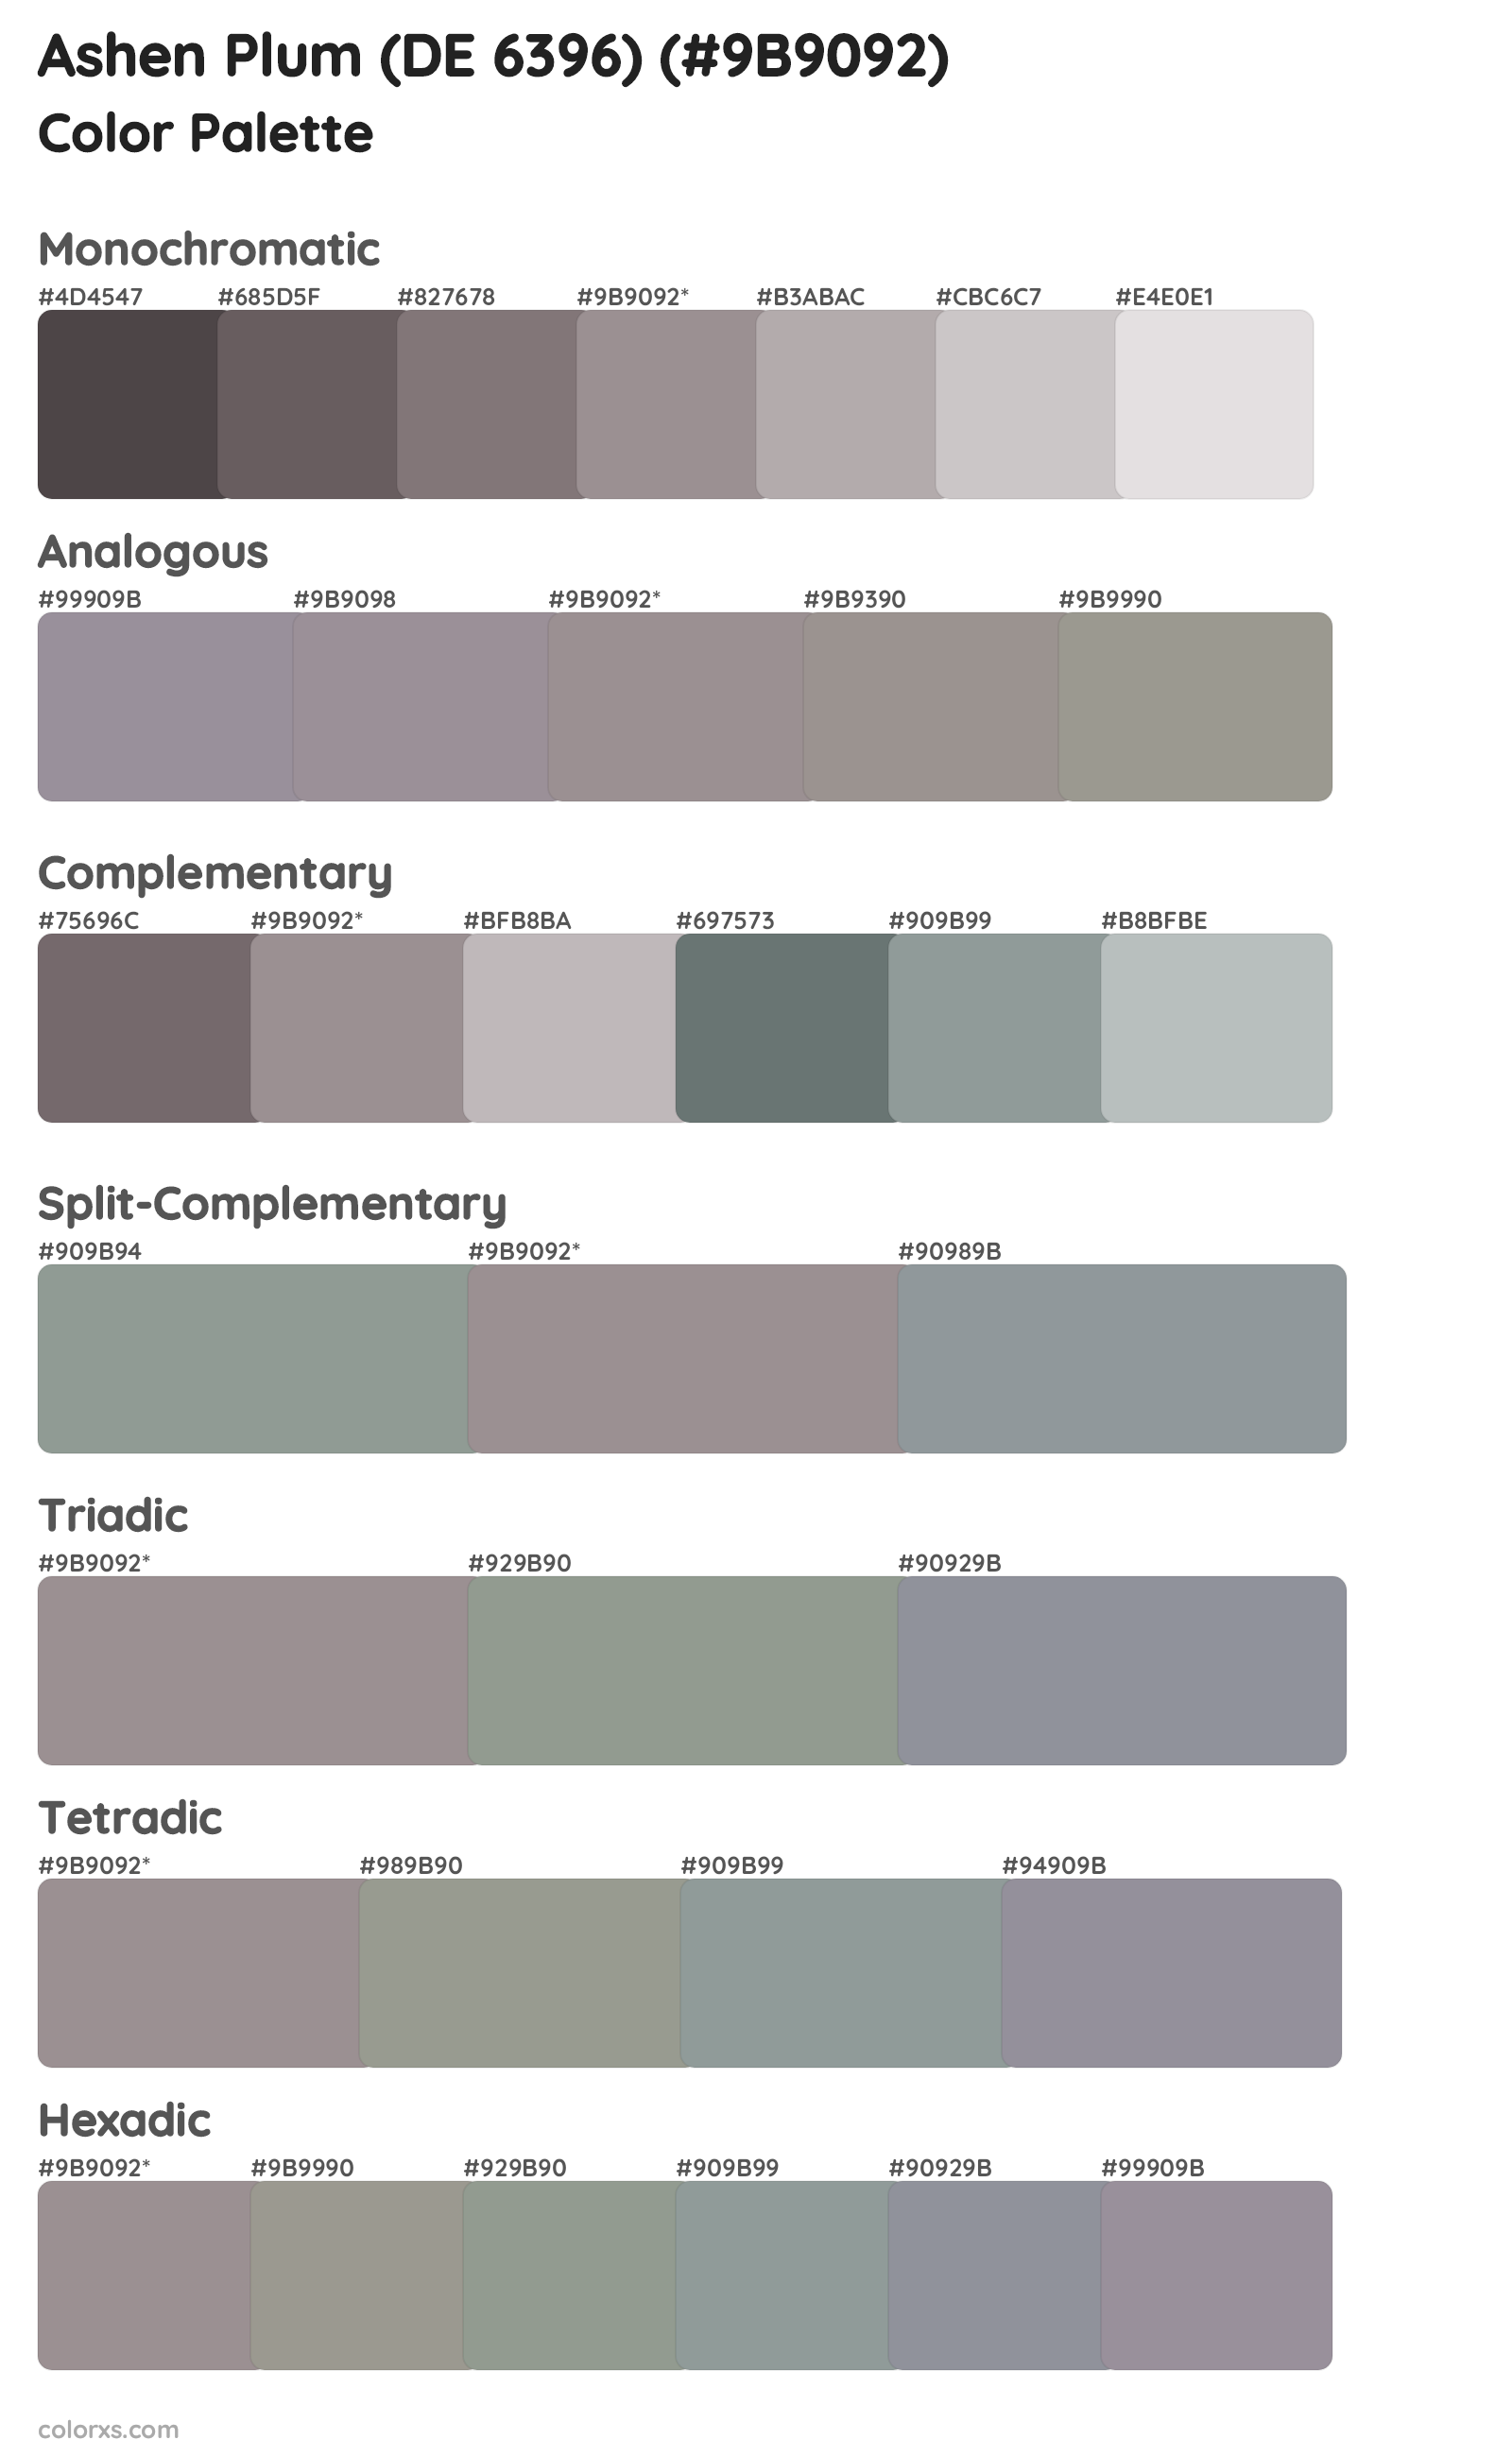 Ashen Plum (DE 6396) Color Scheme Palettes